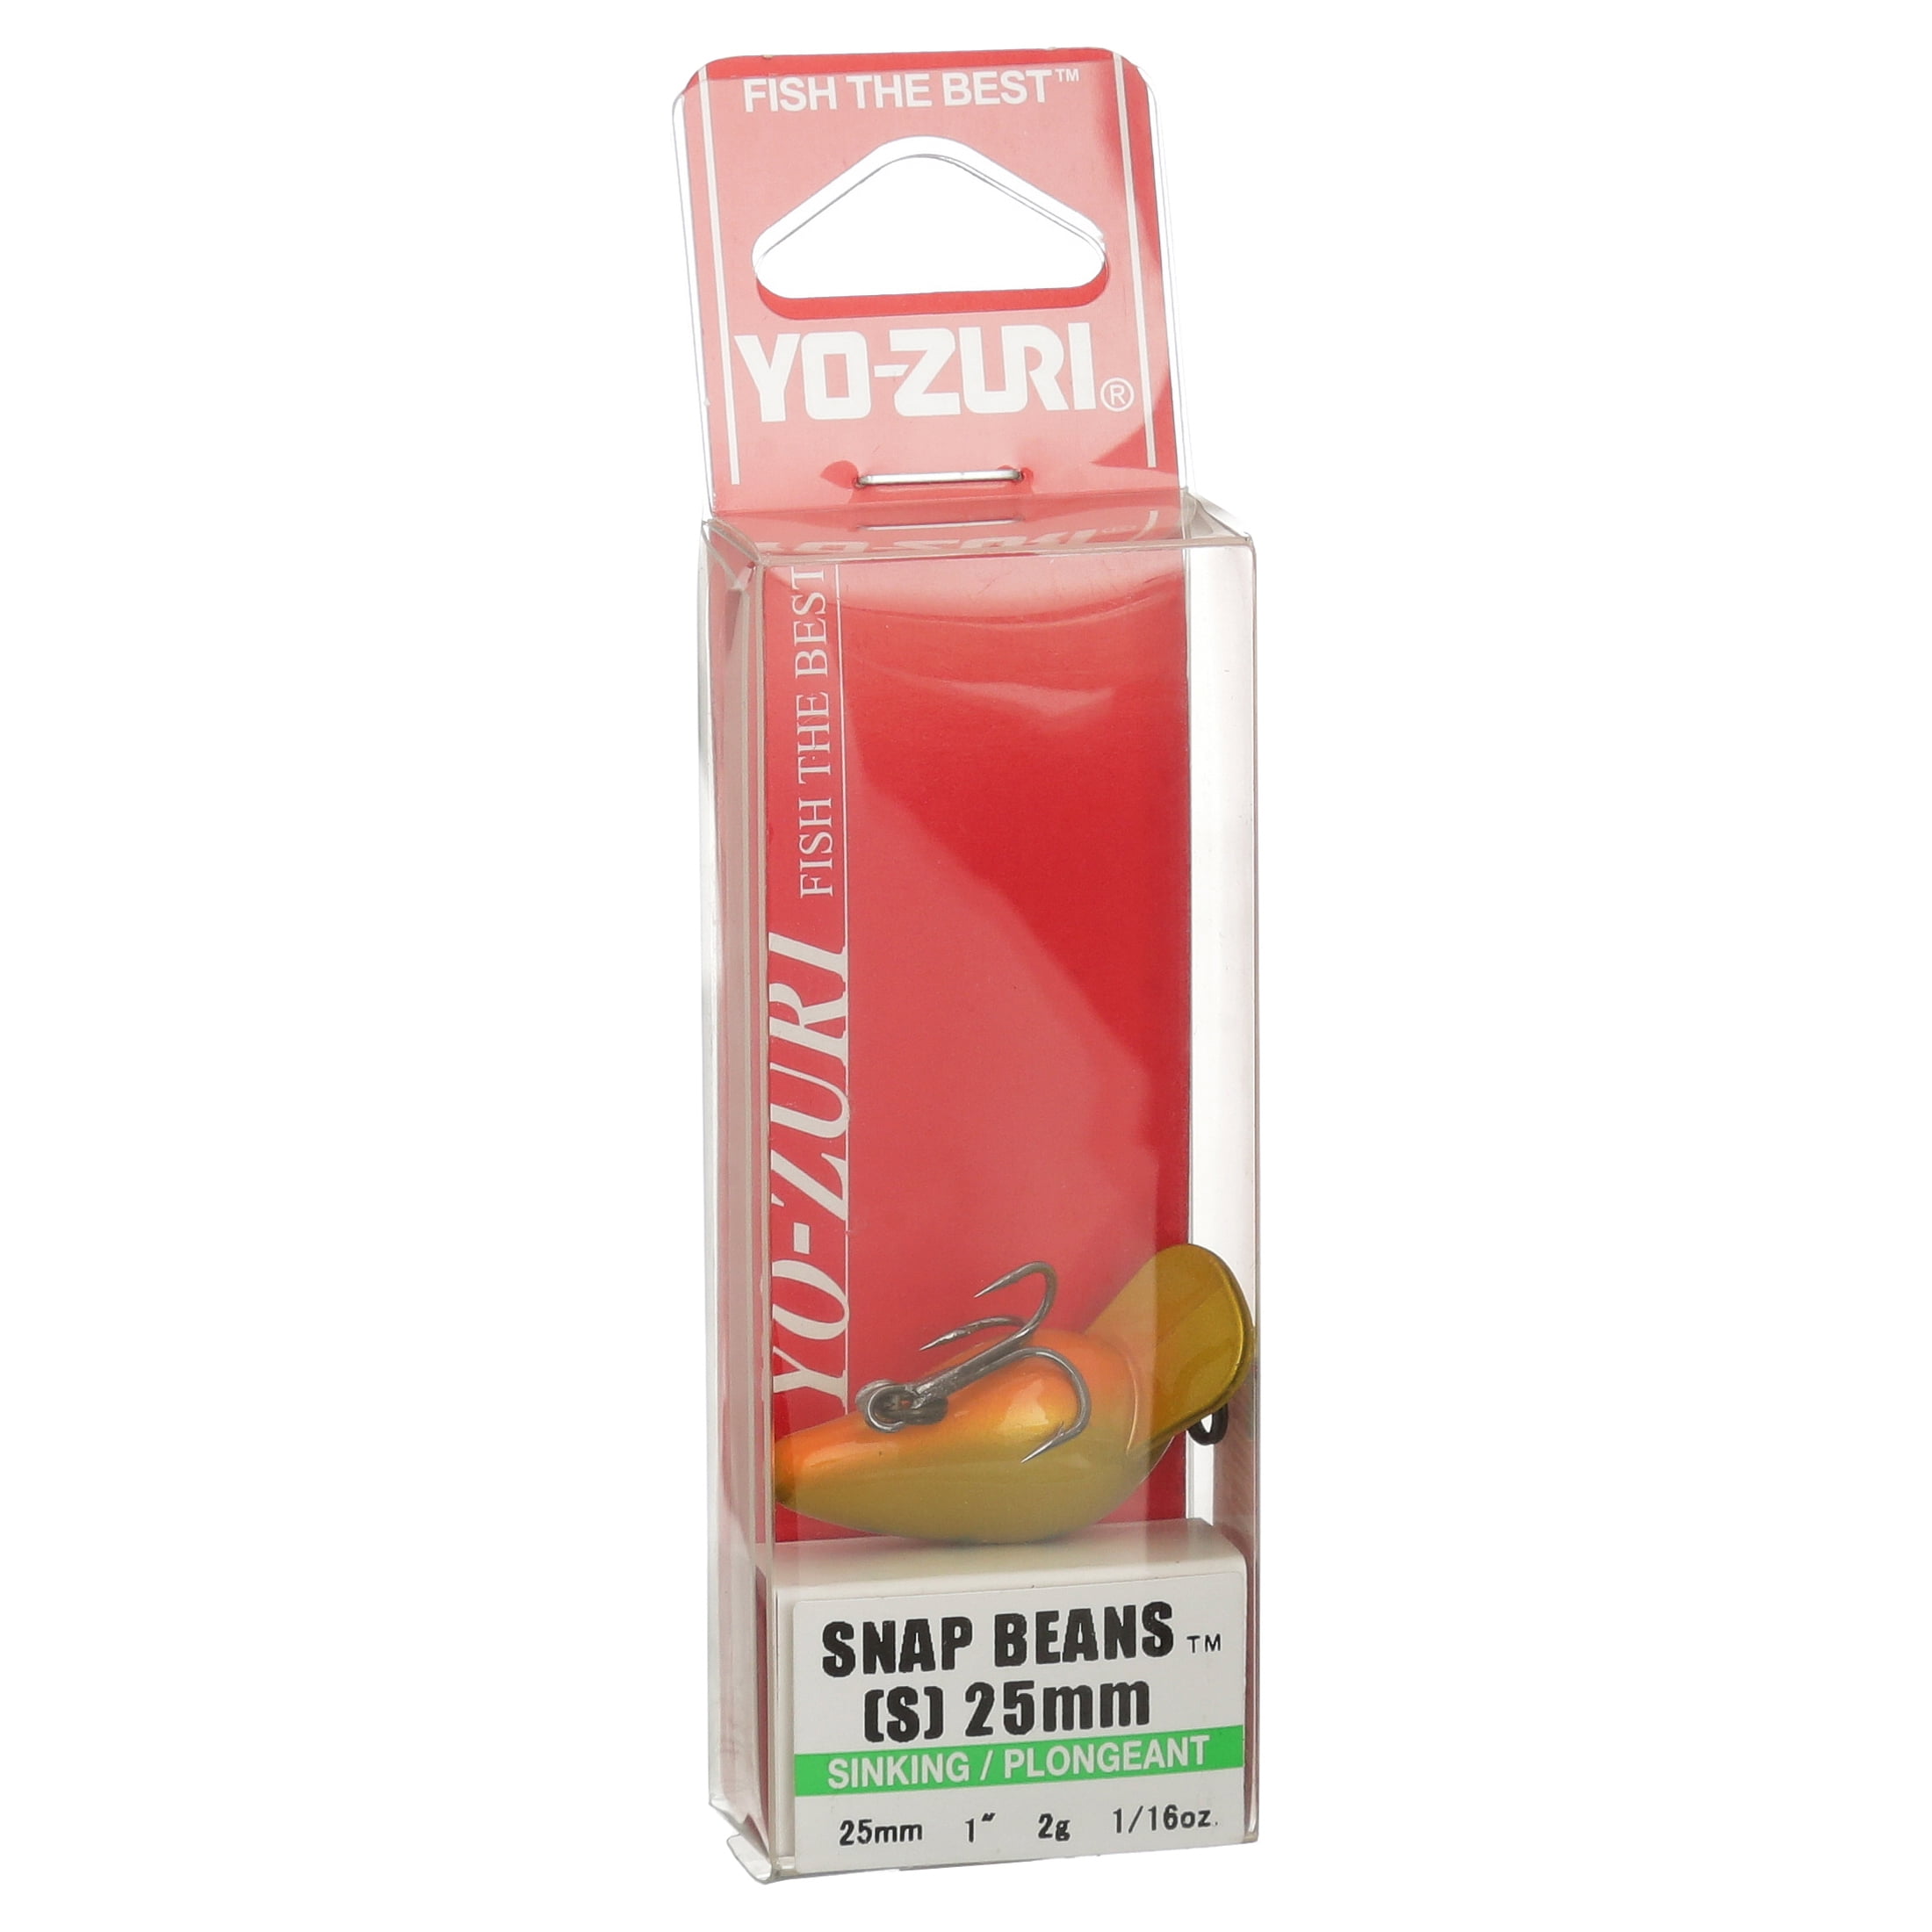 Yo-Zuri Snap Beans 25mm 1 